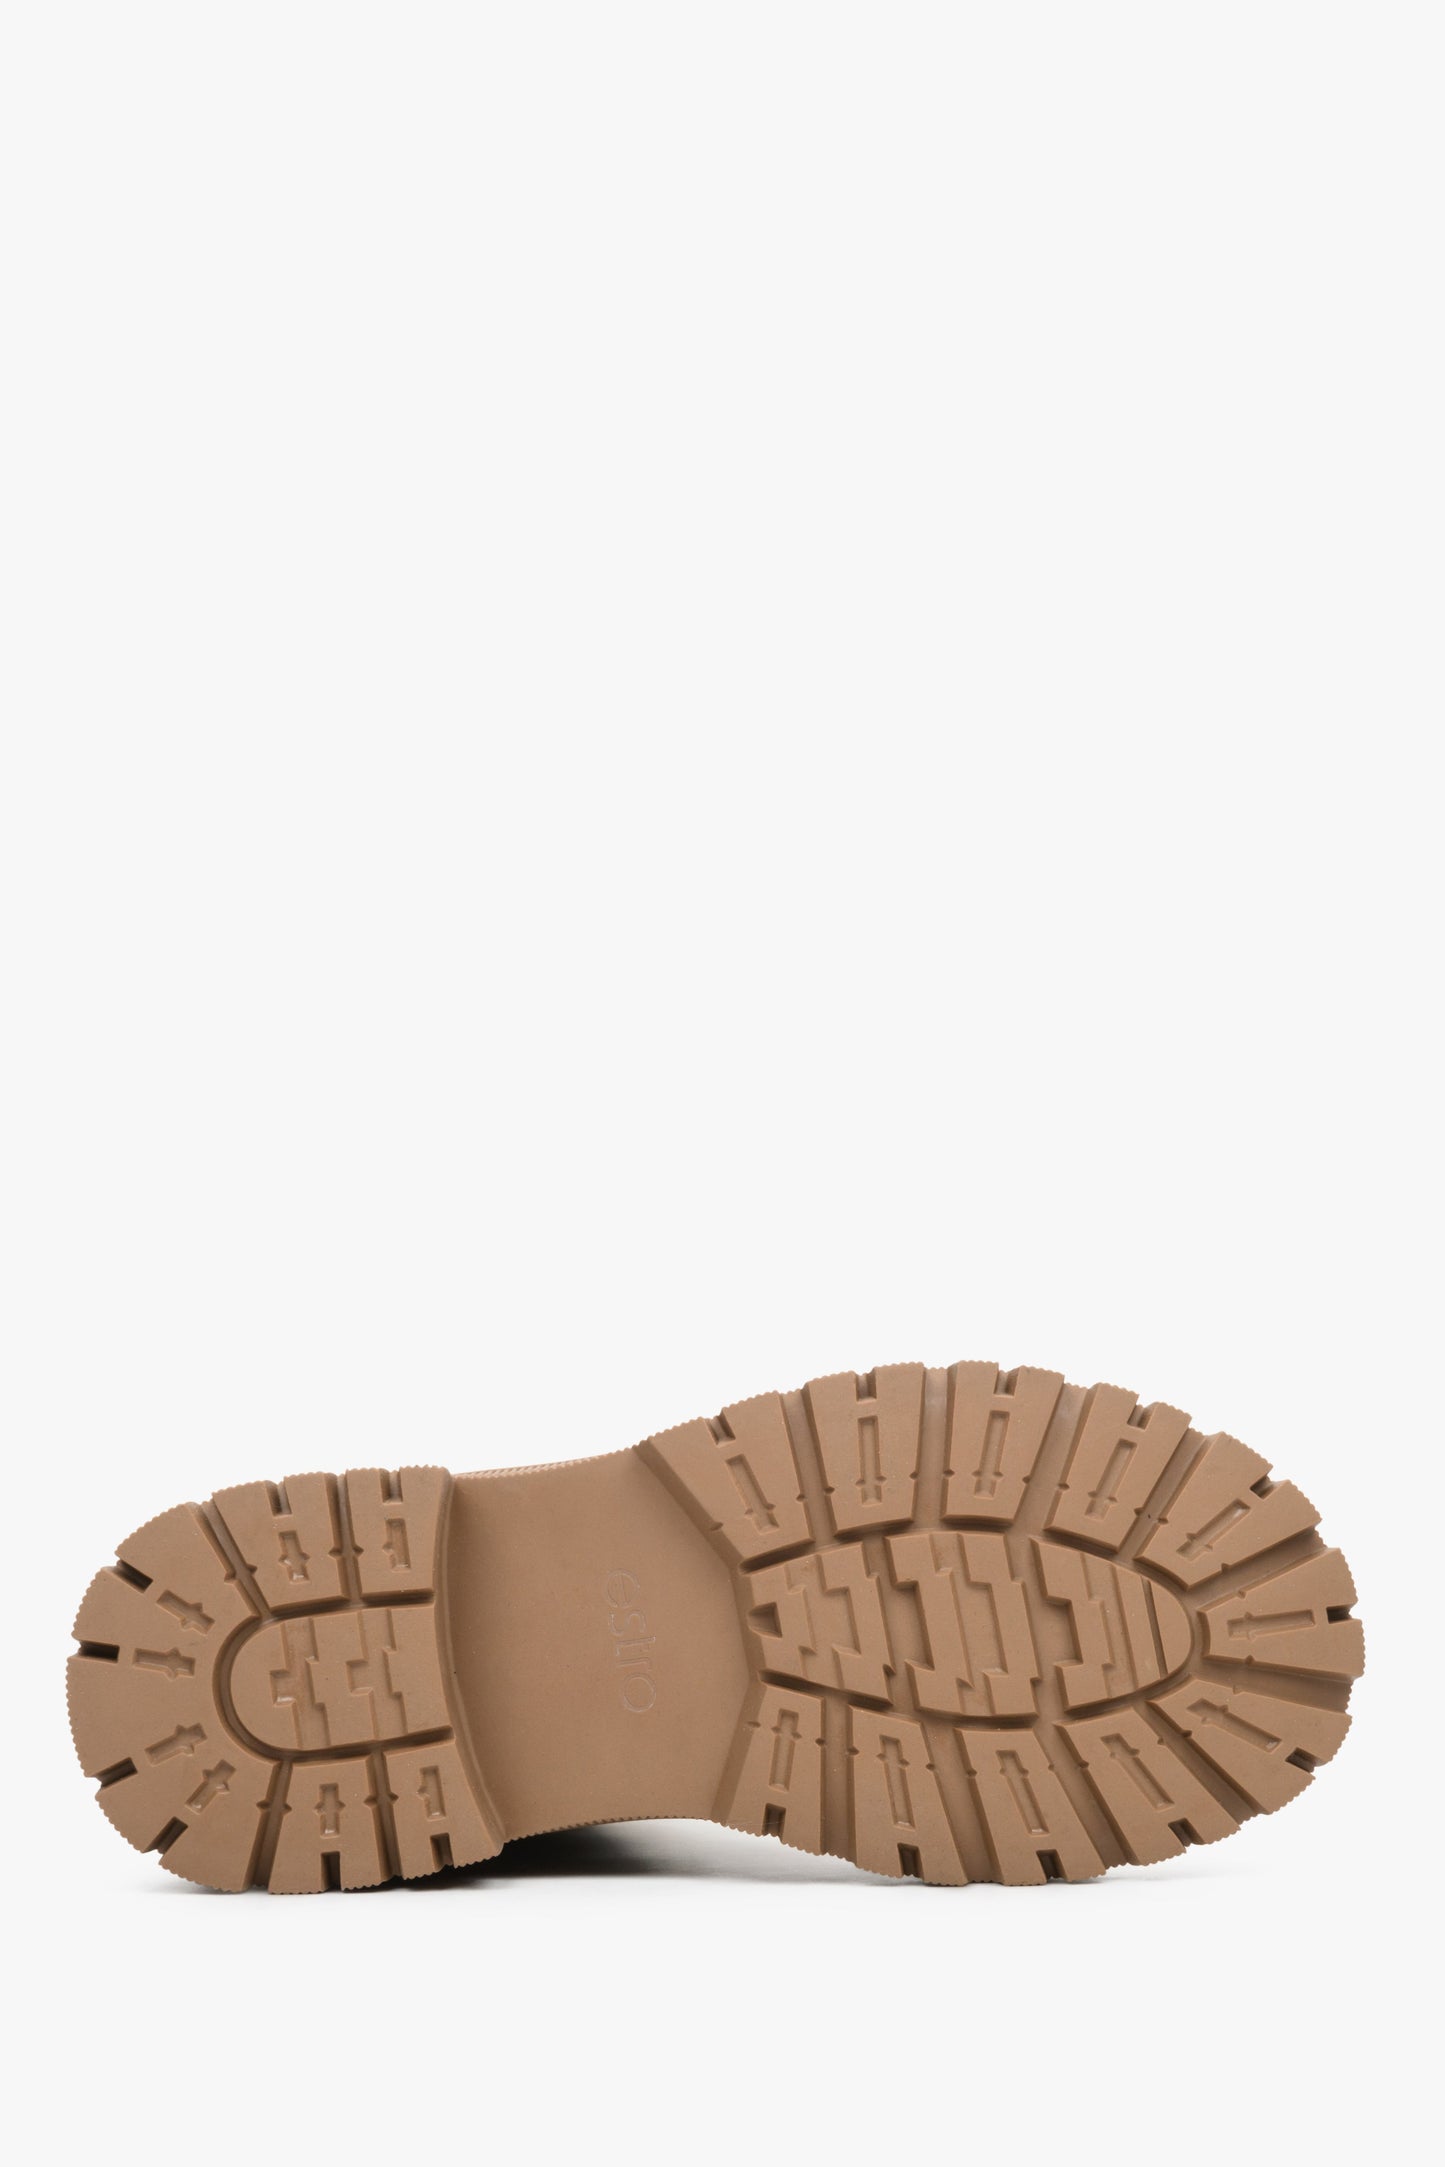 Botki damskie wielosezonowe w kolorze brązowym - zbliżenie na podeszwę buta.